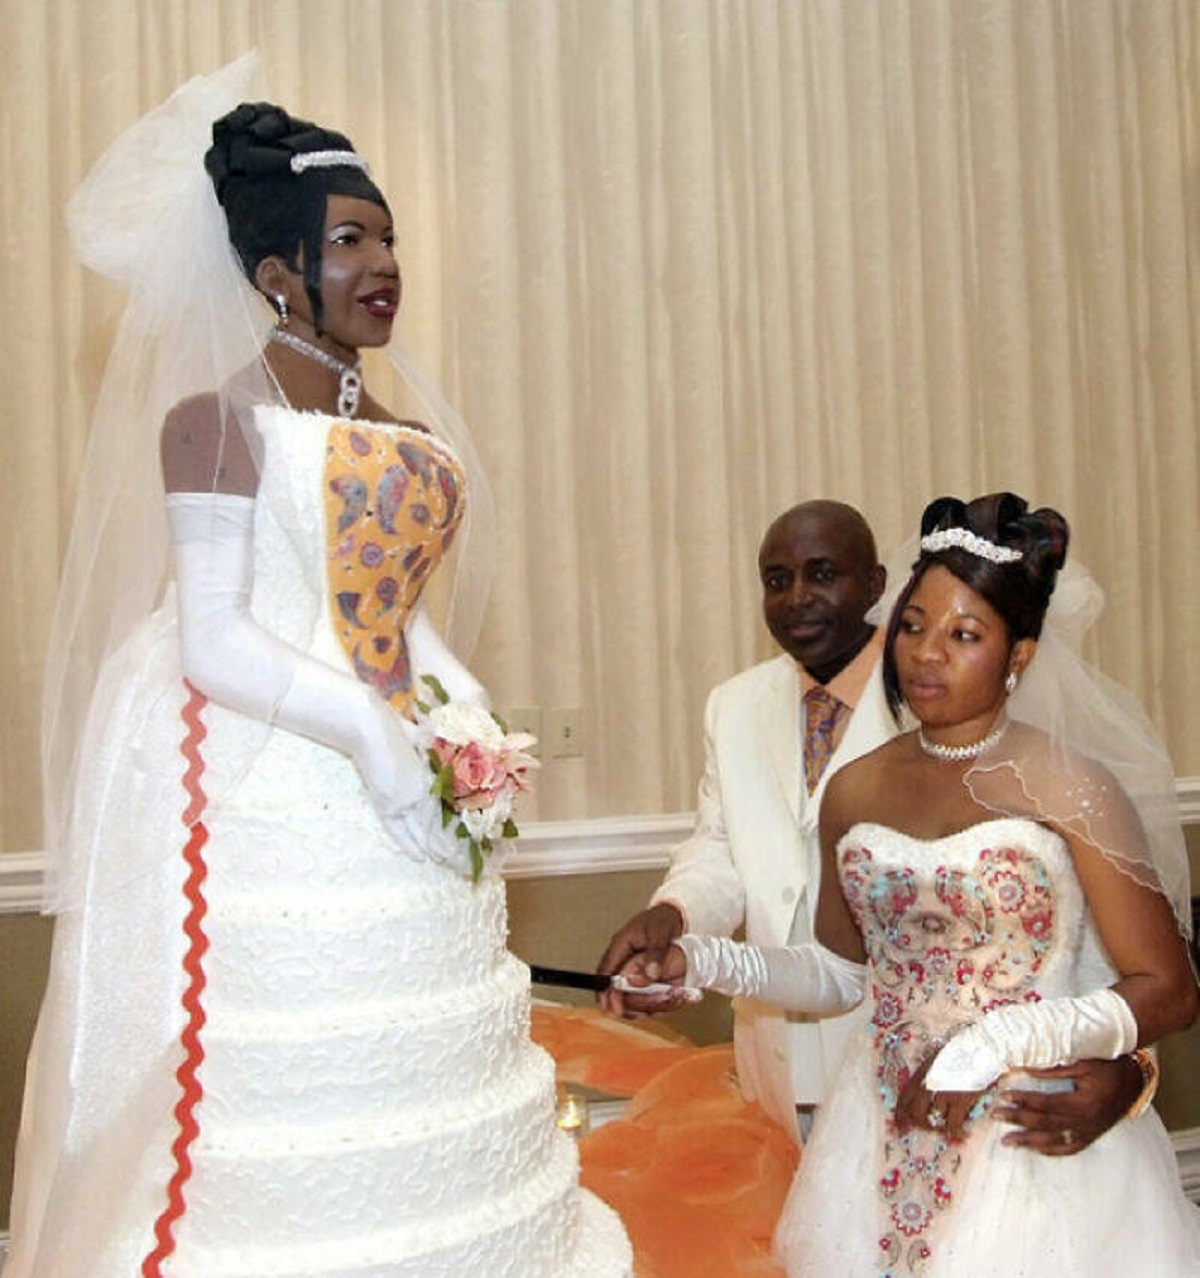 wedding cake fails